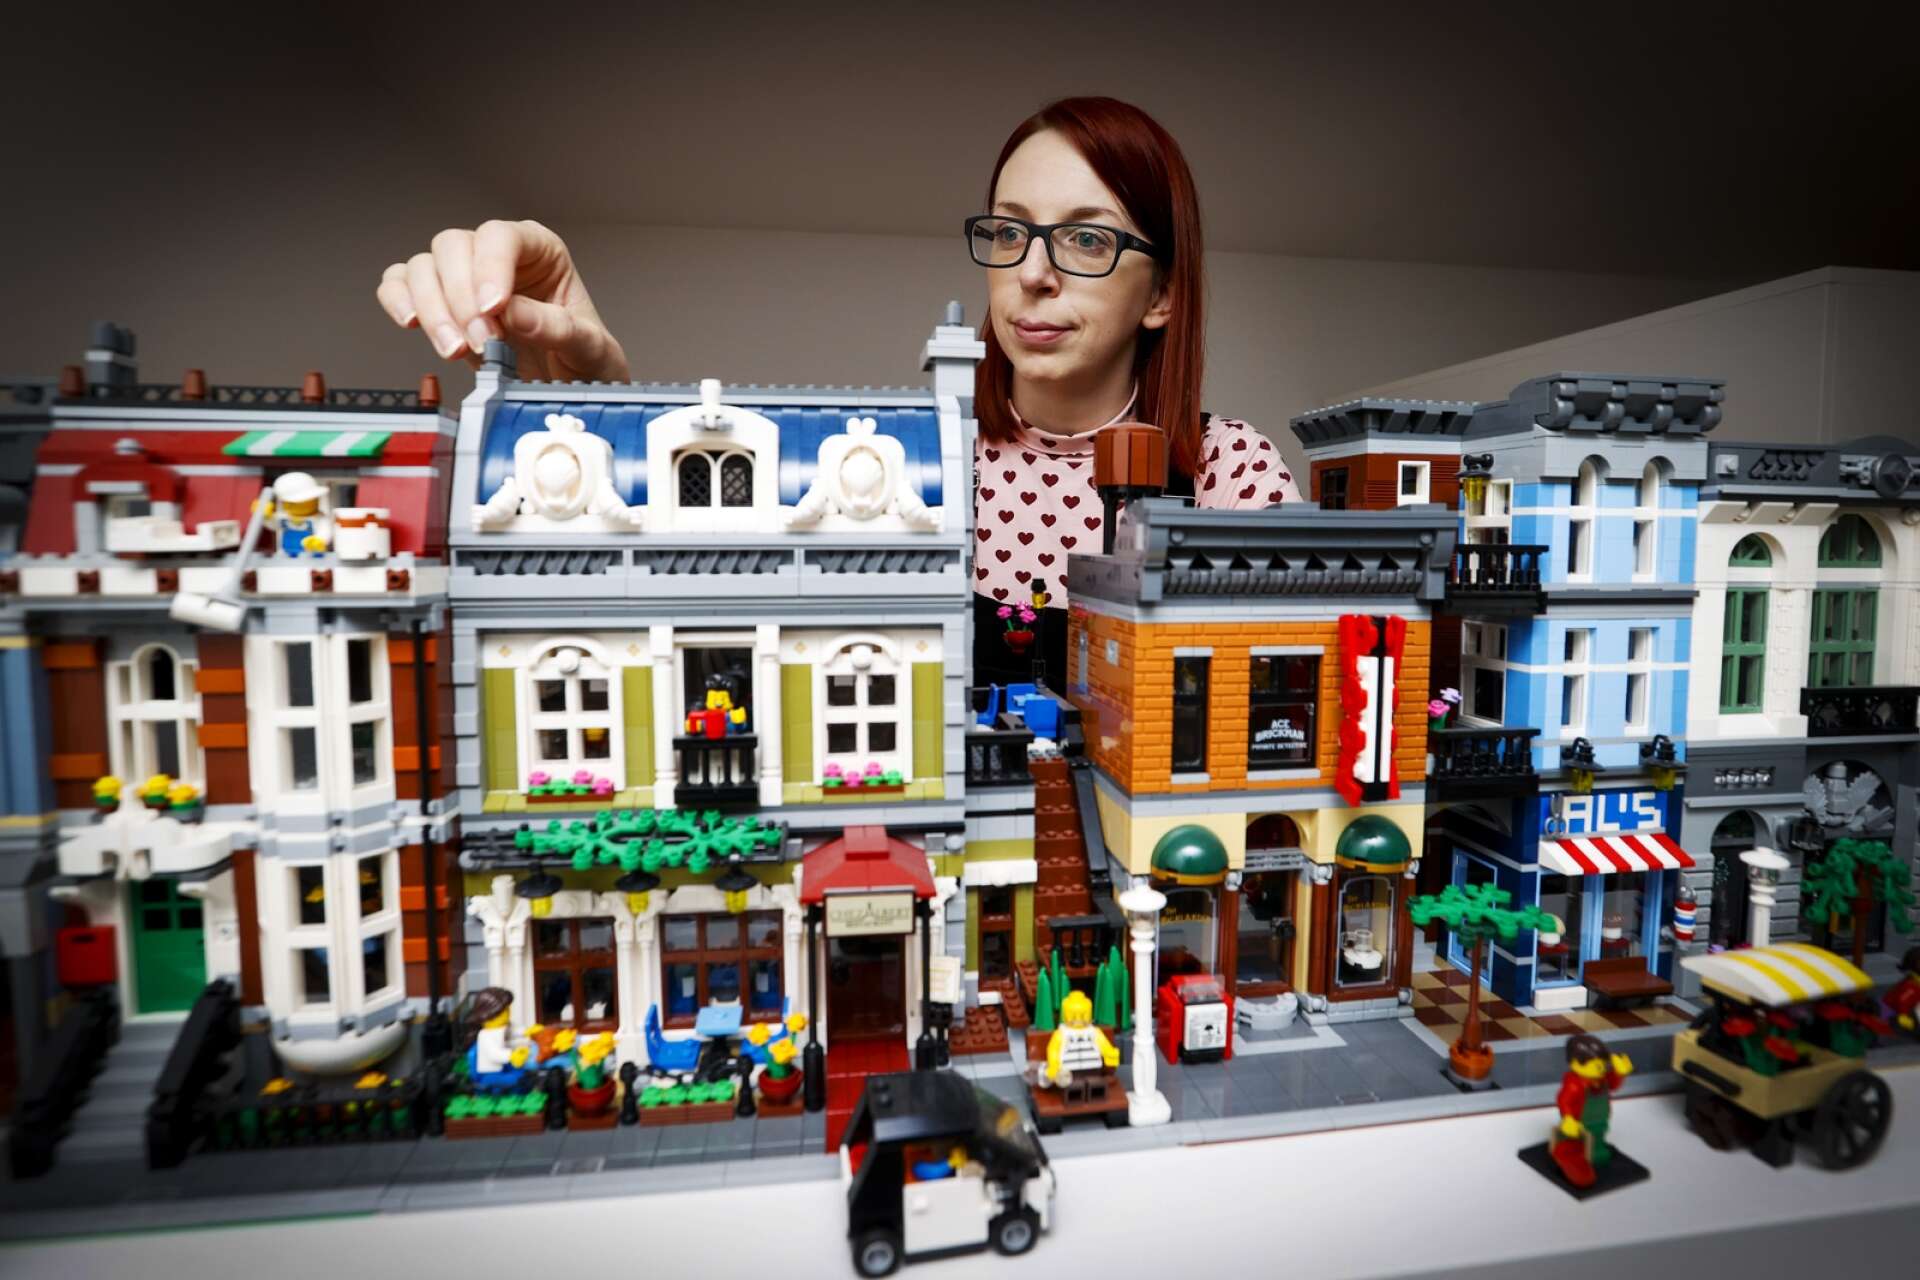 Inget annat än lego får användas när Emma Friman Browne bygger sina världar. ”Jag är nog vad man kallar purist. Jag gillar utmaningen i att få till alla detaljer med bara lego.”